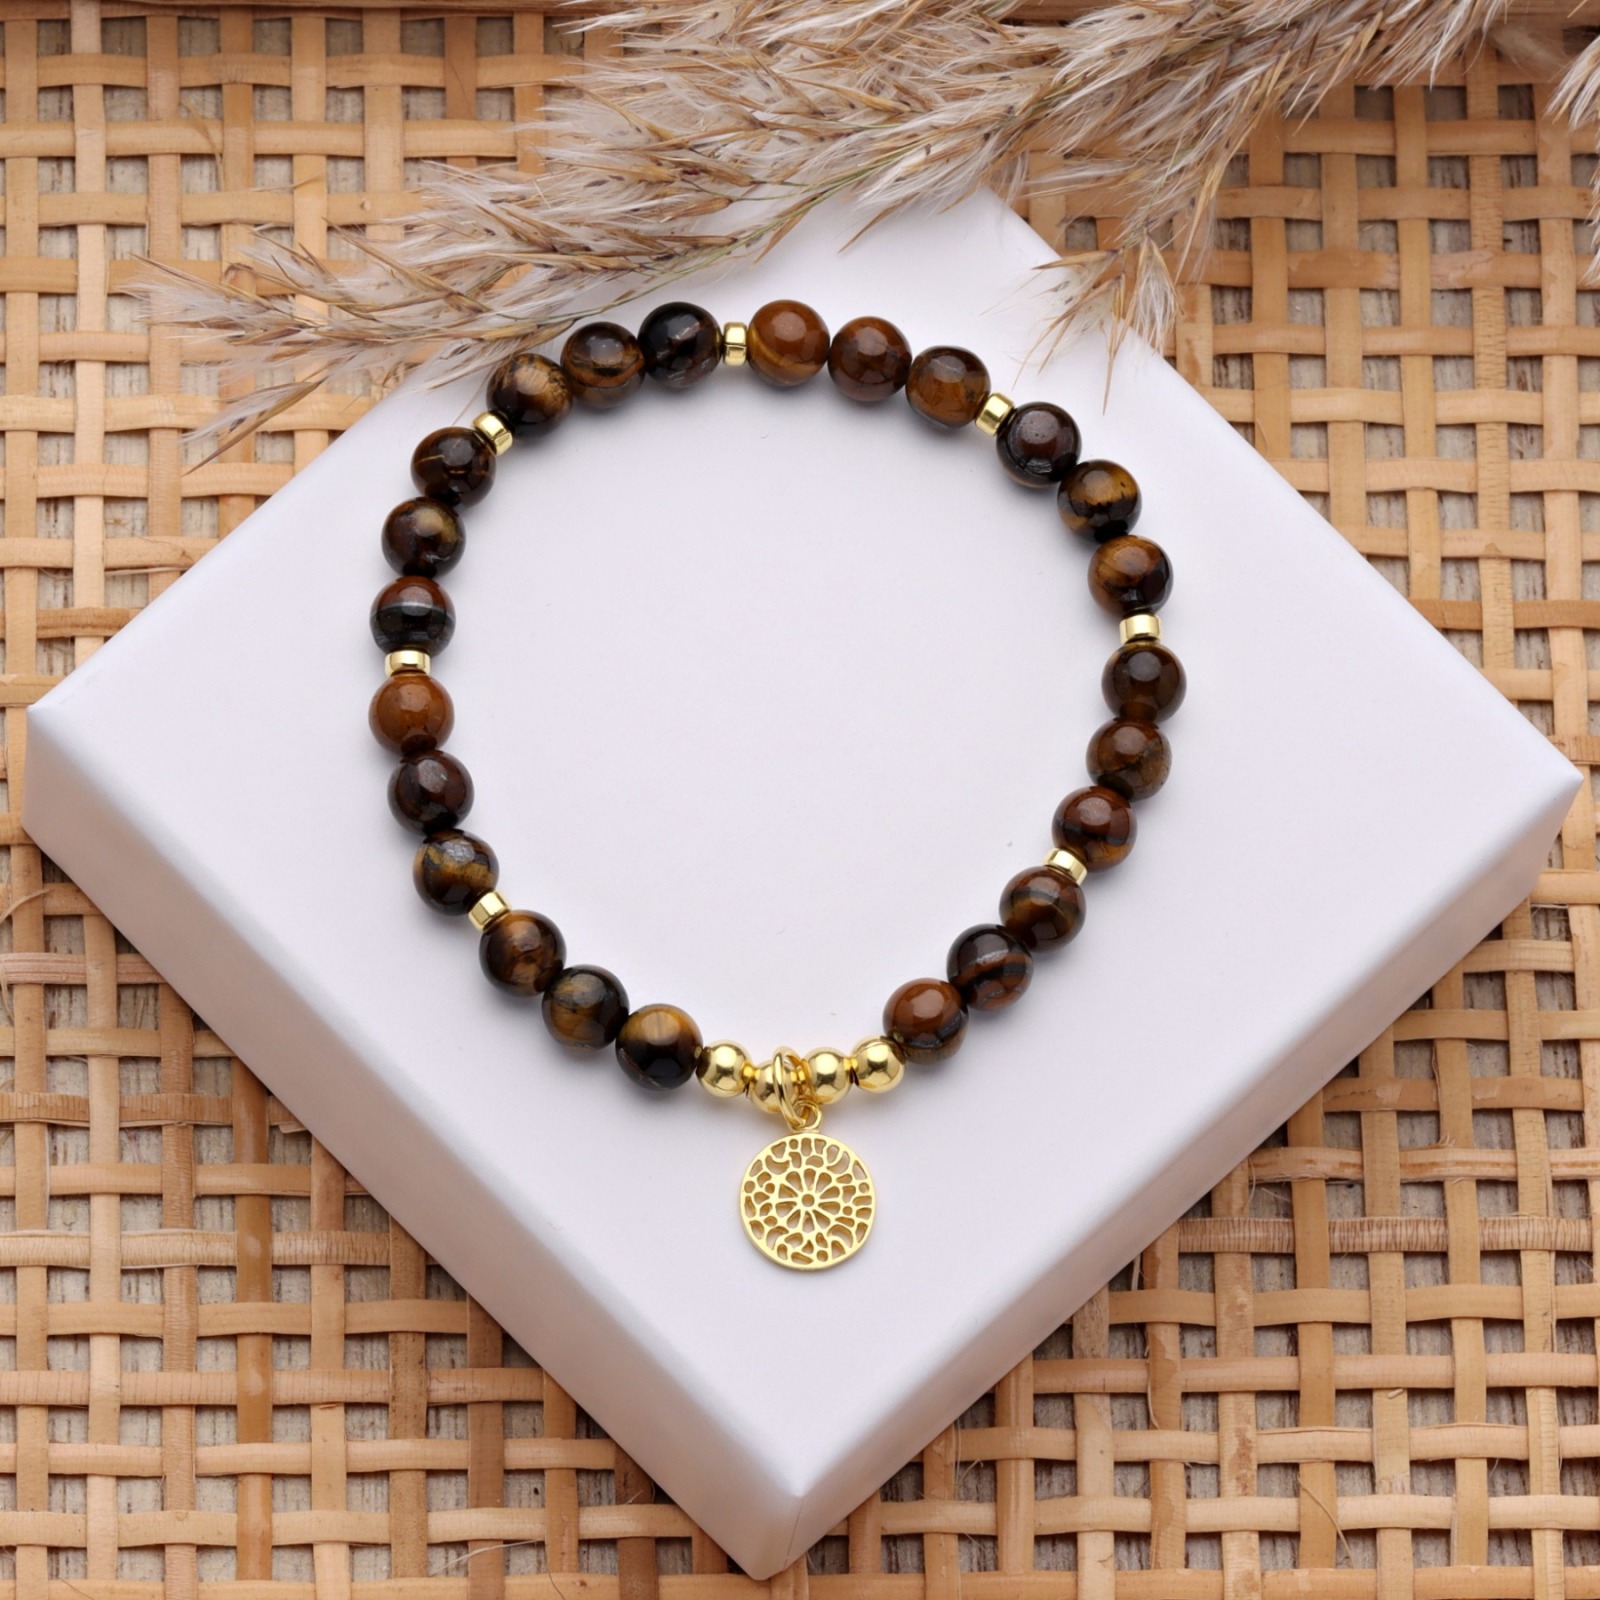 Armband Tigerauge mit Mandala, 725er Silber oder vergoldet, perfektes Geschenk für Frauen 5